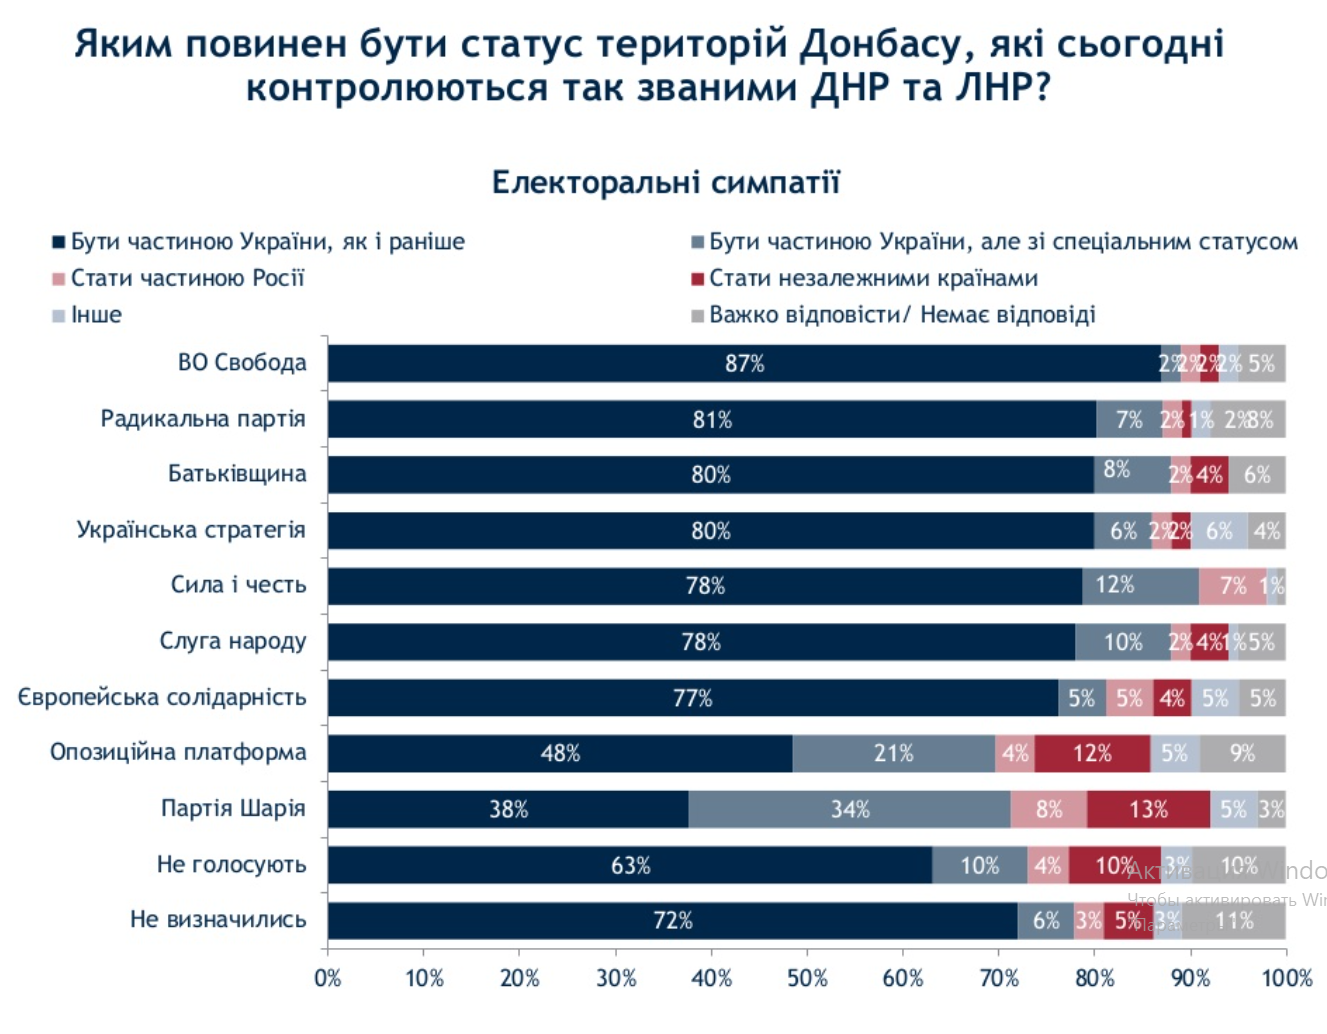 Украинцев спросили о судьбе оккупированного Донбасса. За спецстатус лишь 10% – опрос